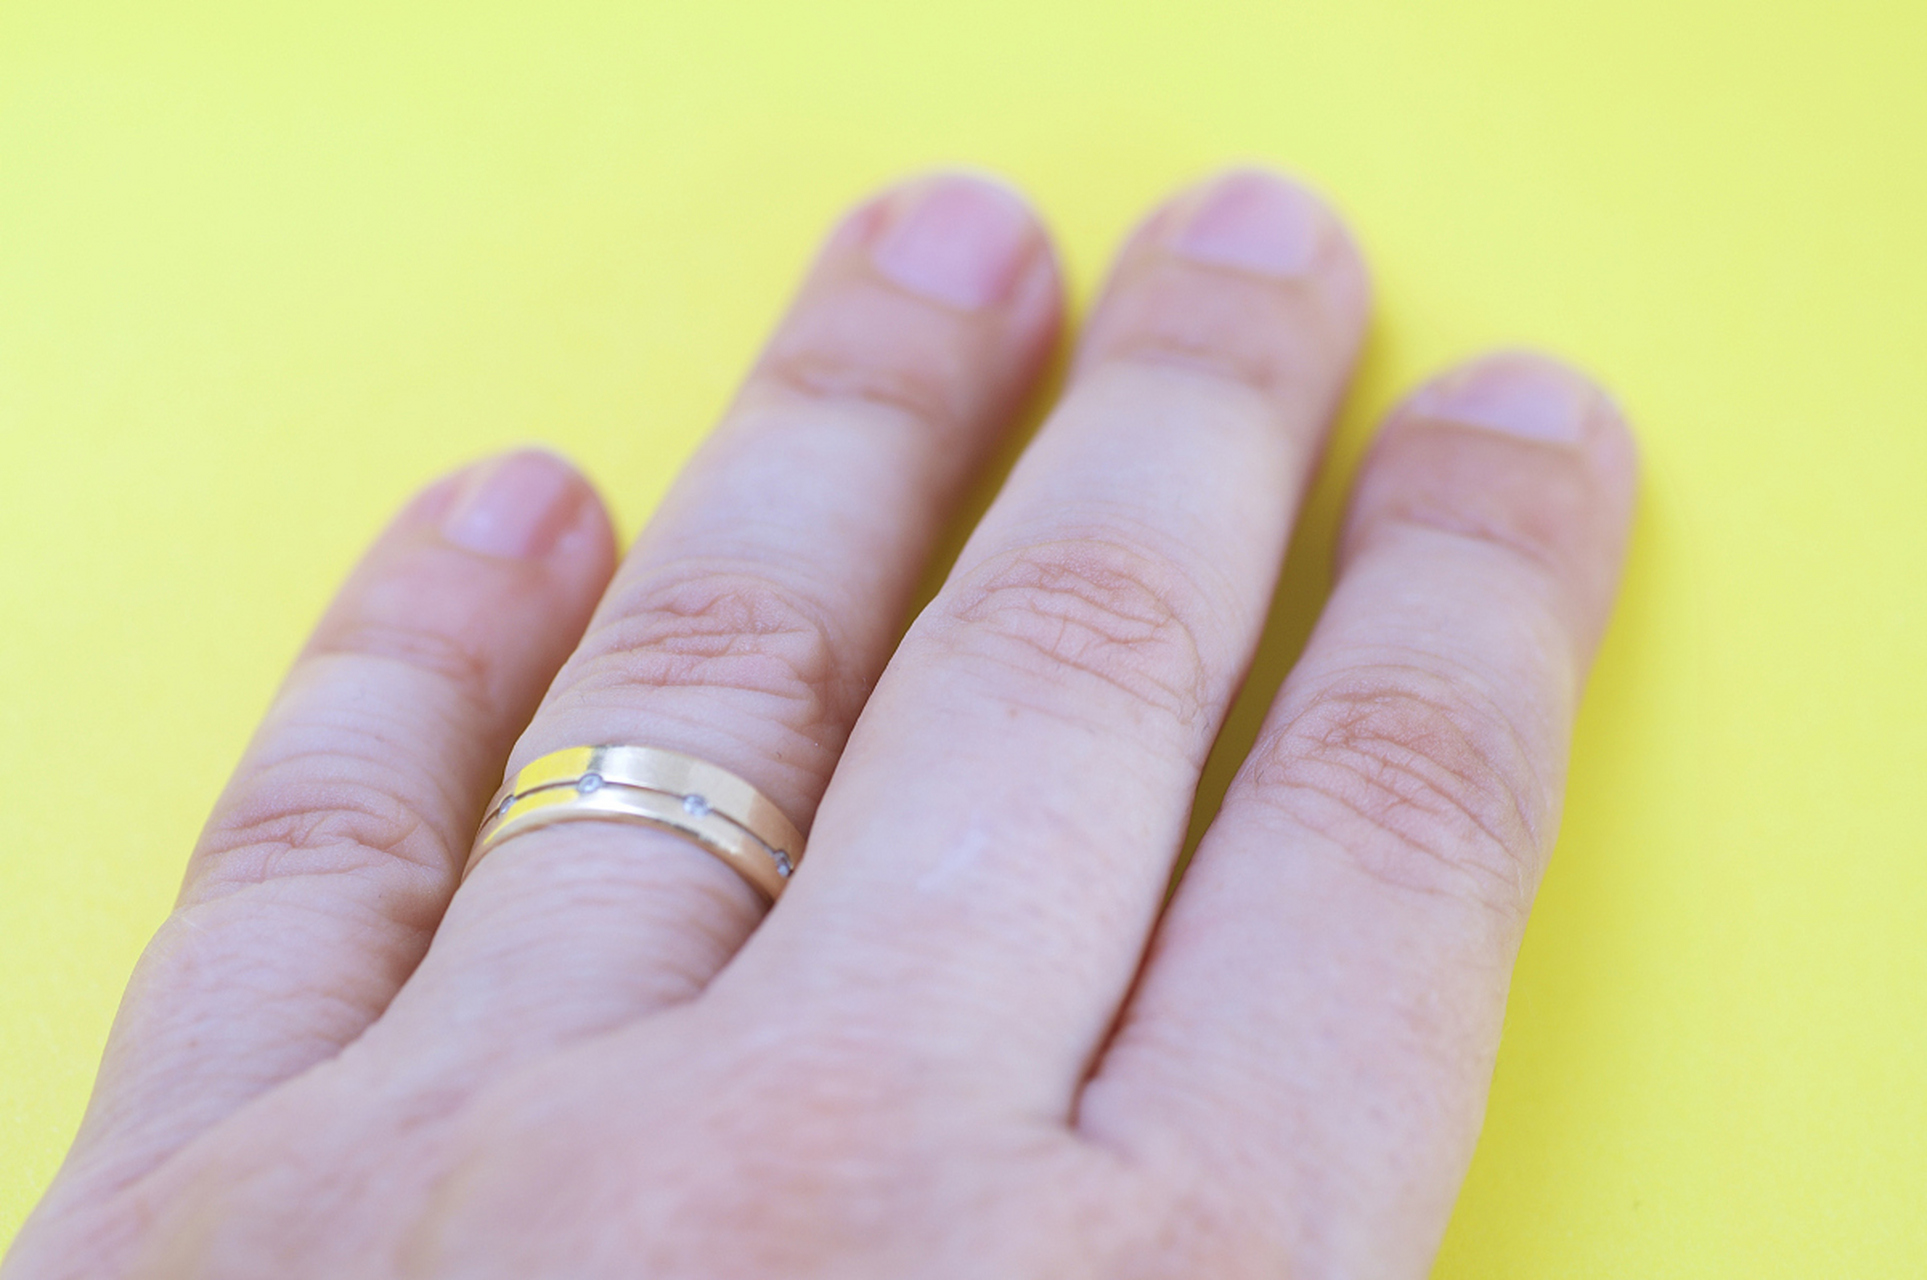 右手无名指戴戒指象征恋爱或订婚,起源于古罗马时期爱情之脉信仰